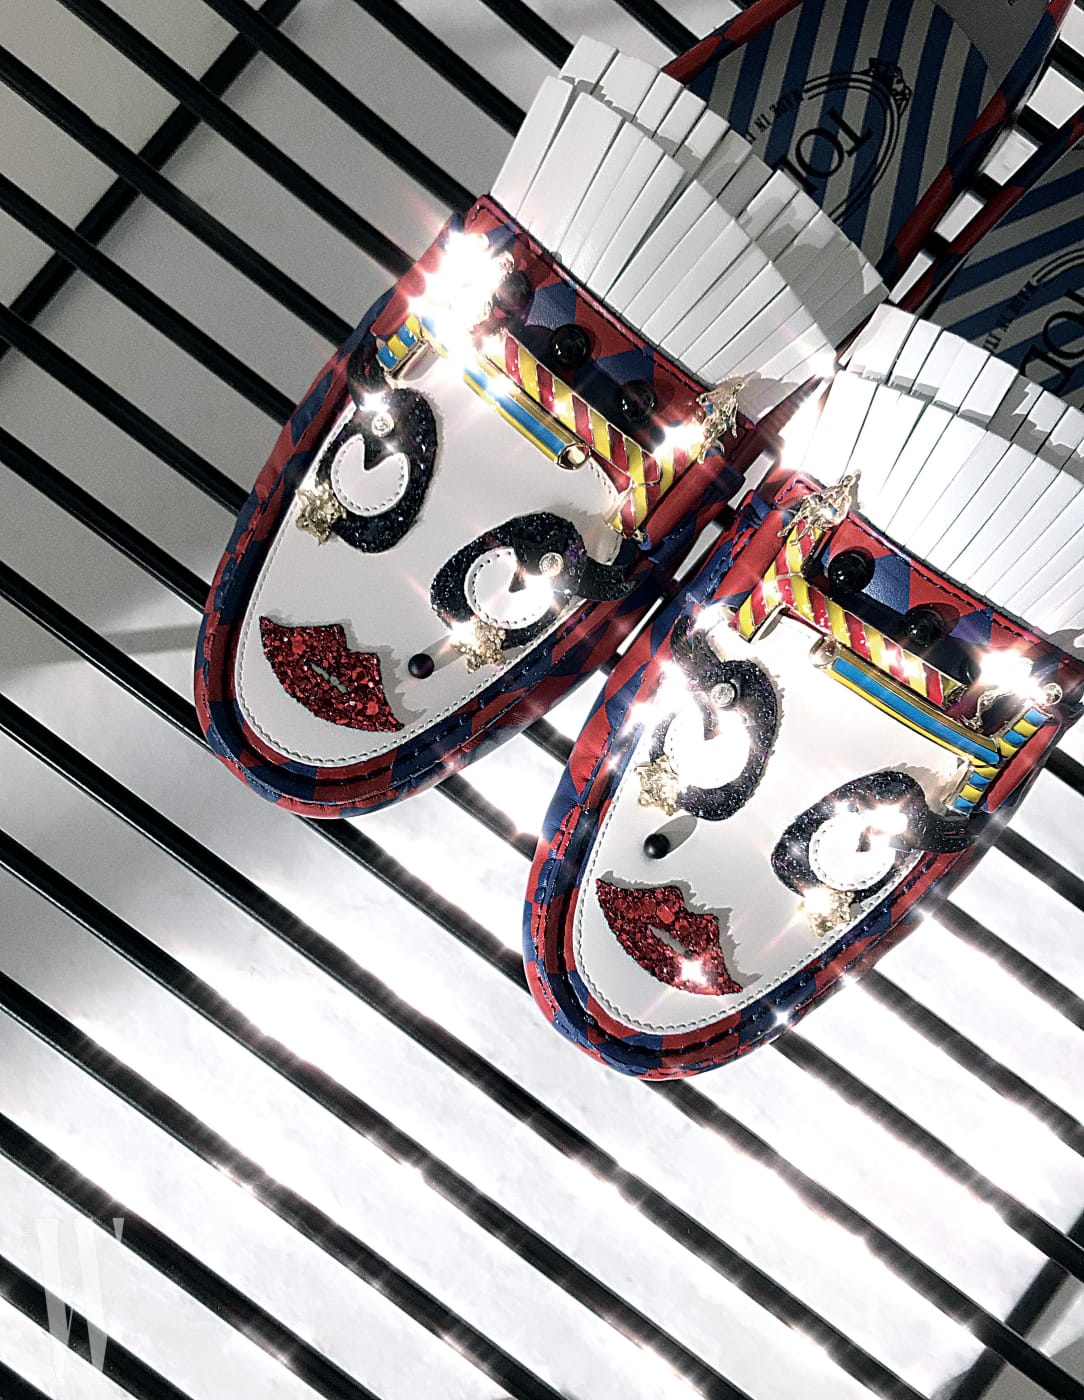 피에로 얼굴이 연상되는 위트 있는 서커스 모티프 드라이빙 슈즈는 토즈 제품. 1백40만원대.